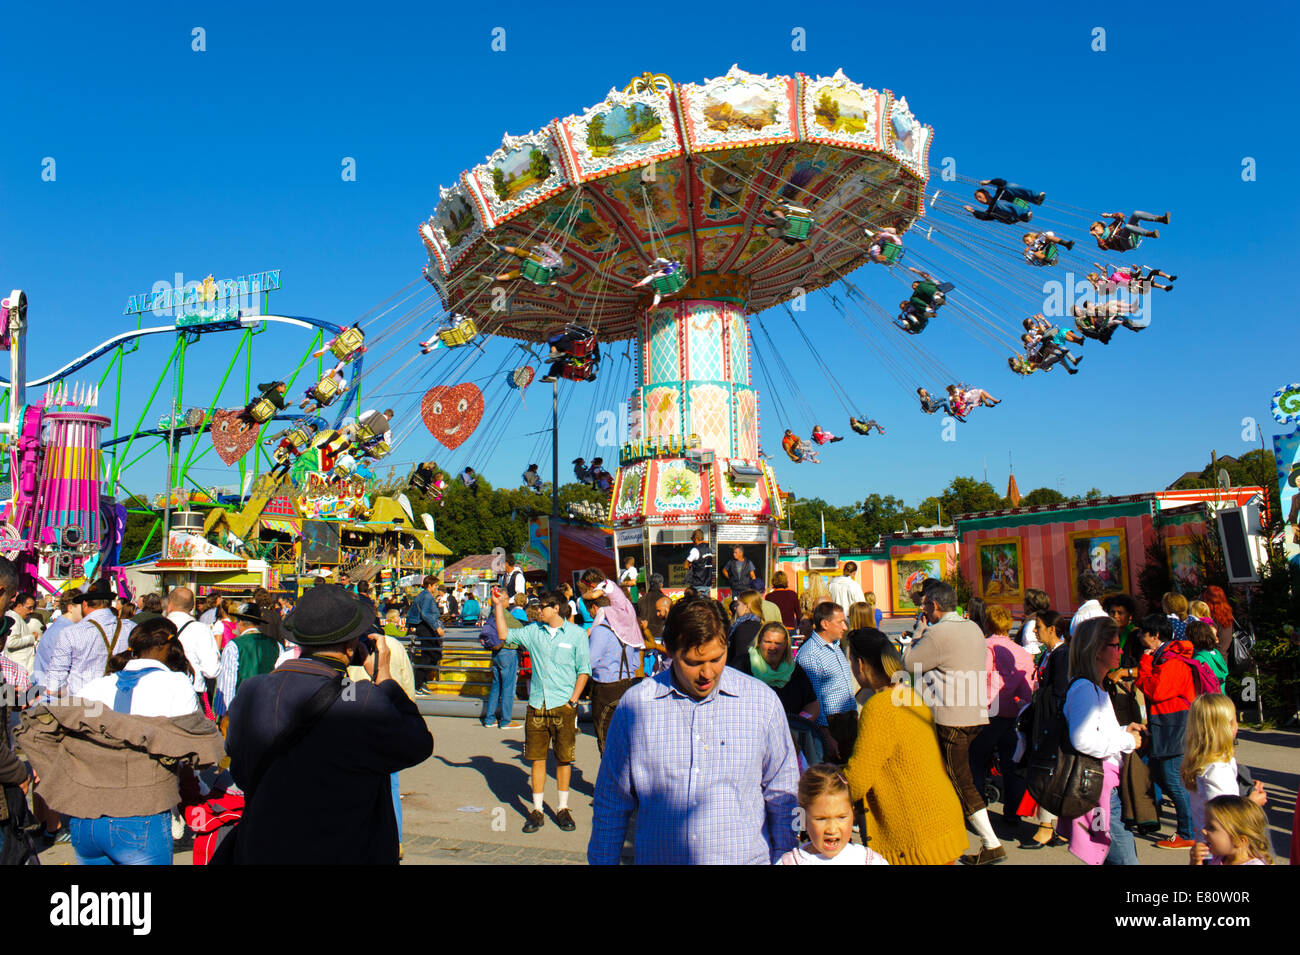 L'Oktoberfest de Munich est le plus grand festival de bière du monde. Les visiteurs ont beaucoup de plaisir avec de grands carrousels. Banque D'Images